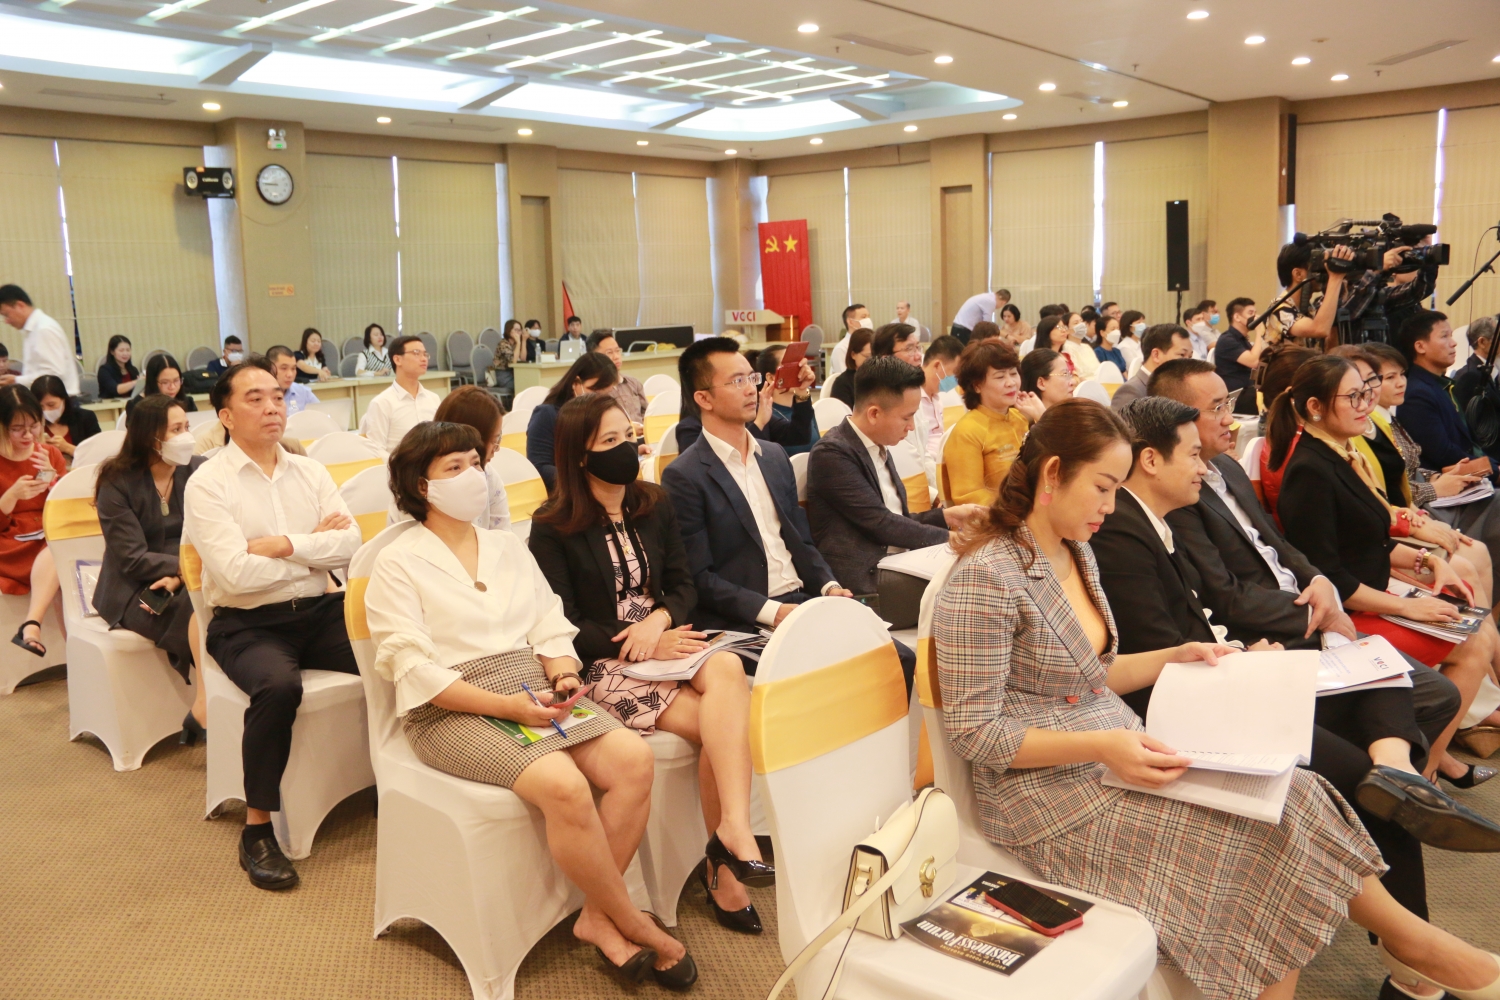 Đạo đức doanh nhân và văn hóa kinh doanh Việt Nam trong bối cảnh mới